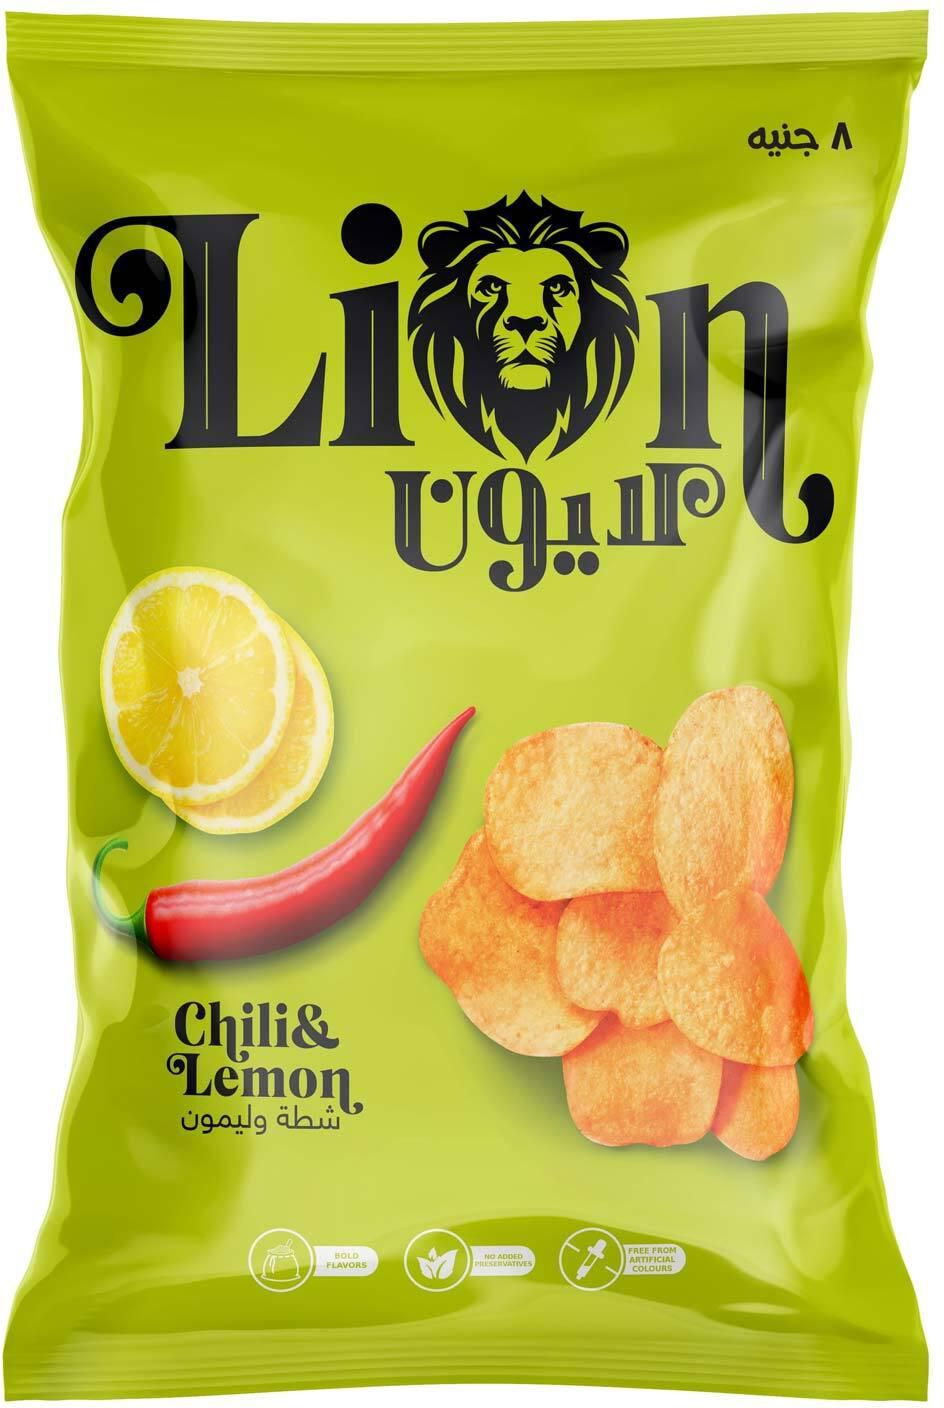 Lion Chili &amp; Lemon Chips - 82 gram